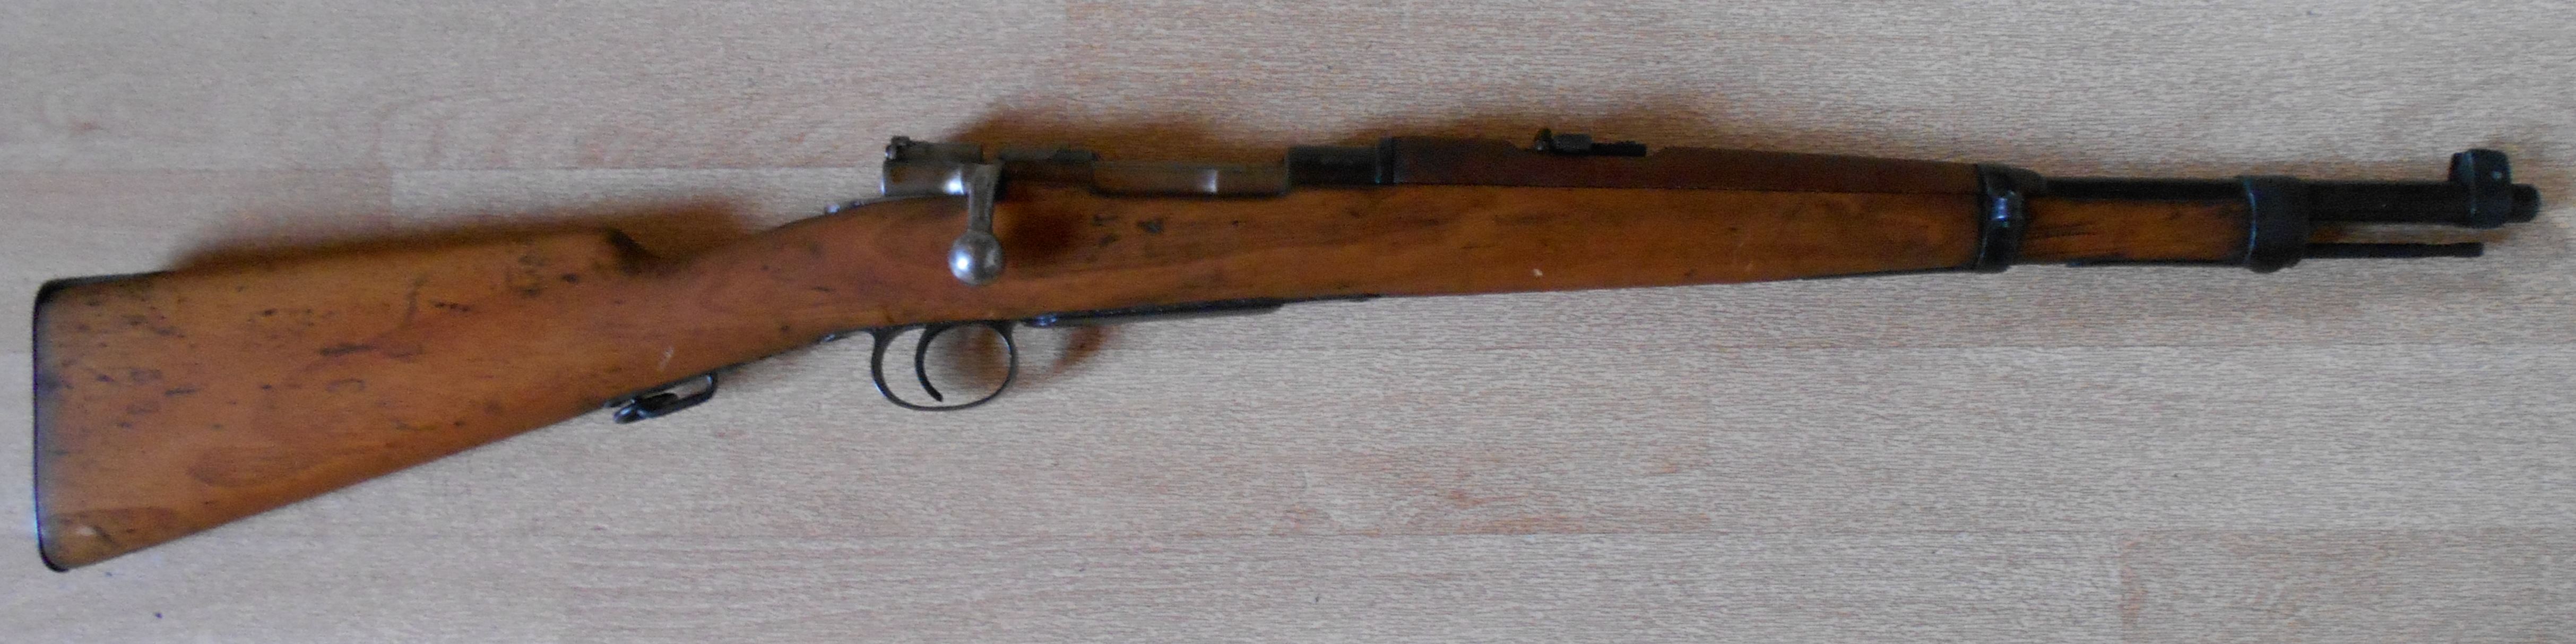 Mauser brésilien Mle 1894 (carabine)